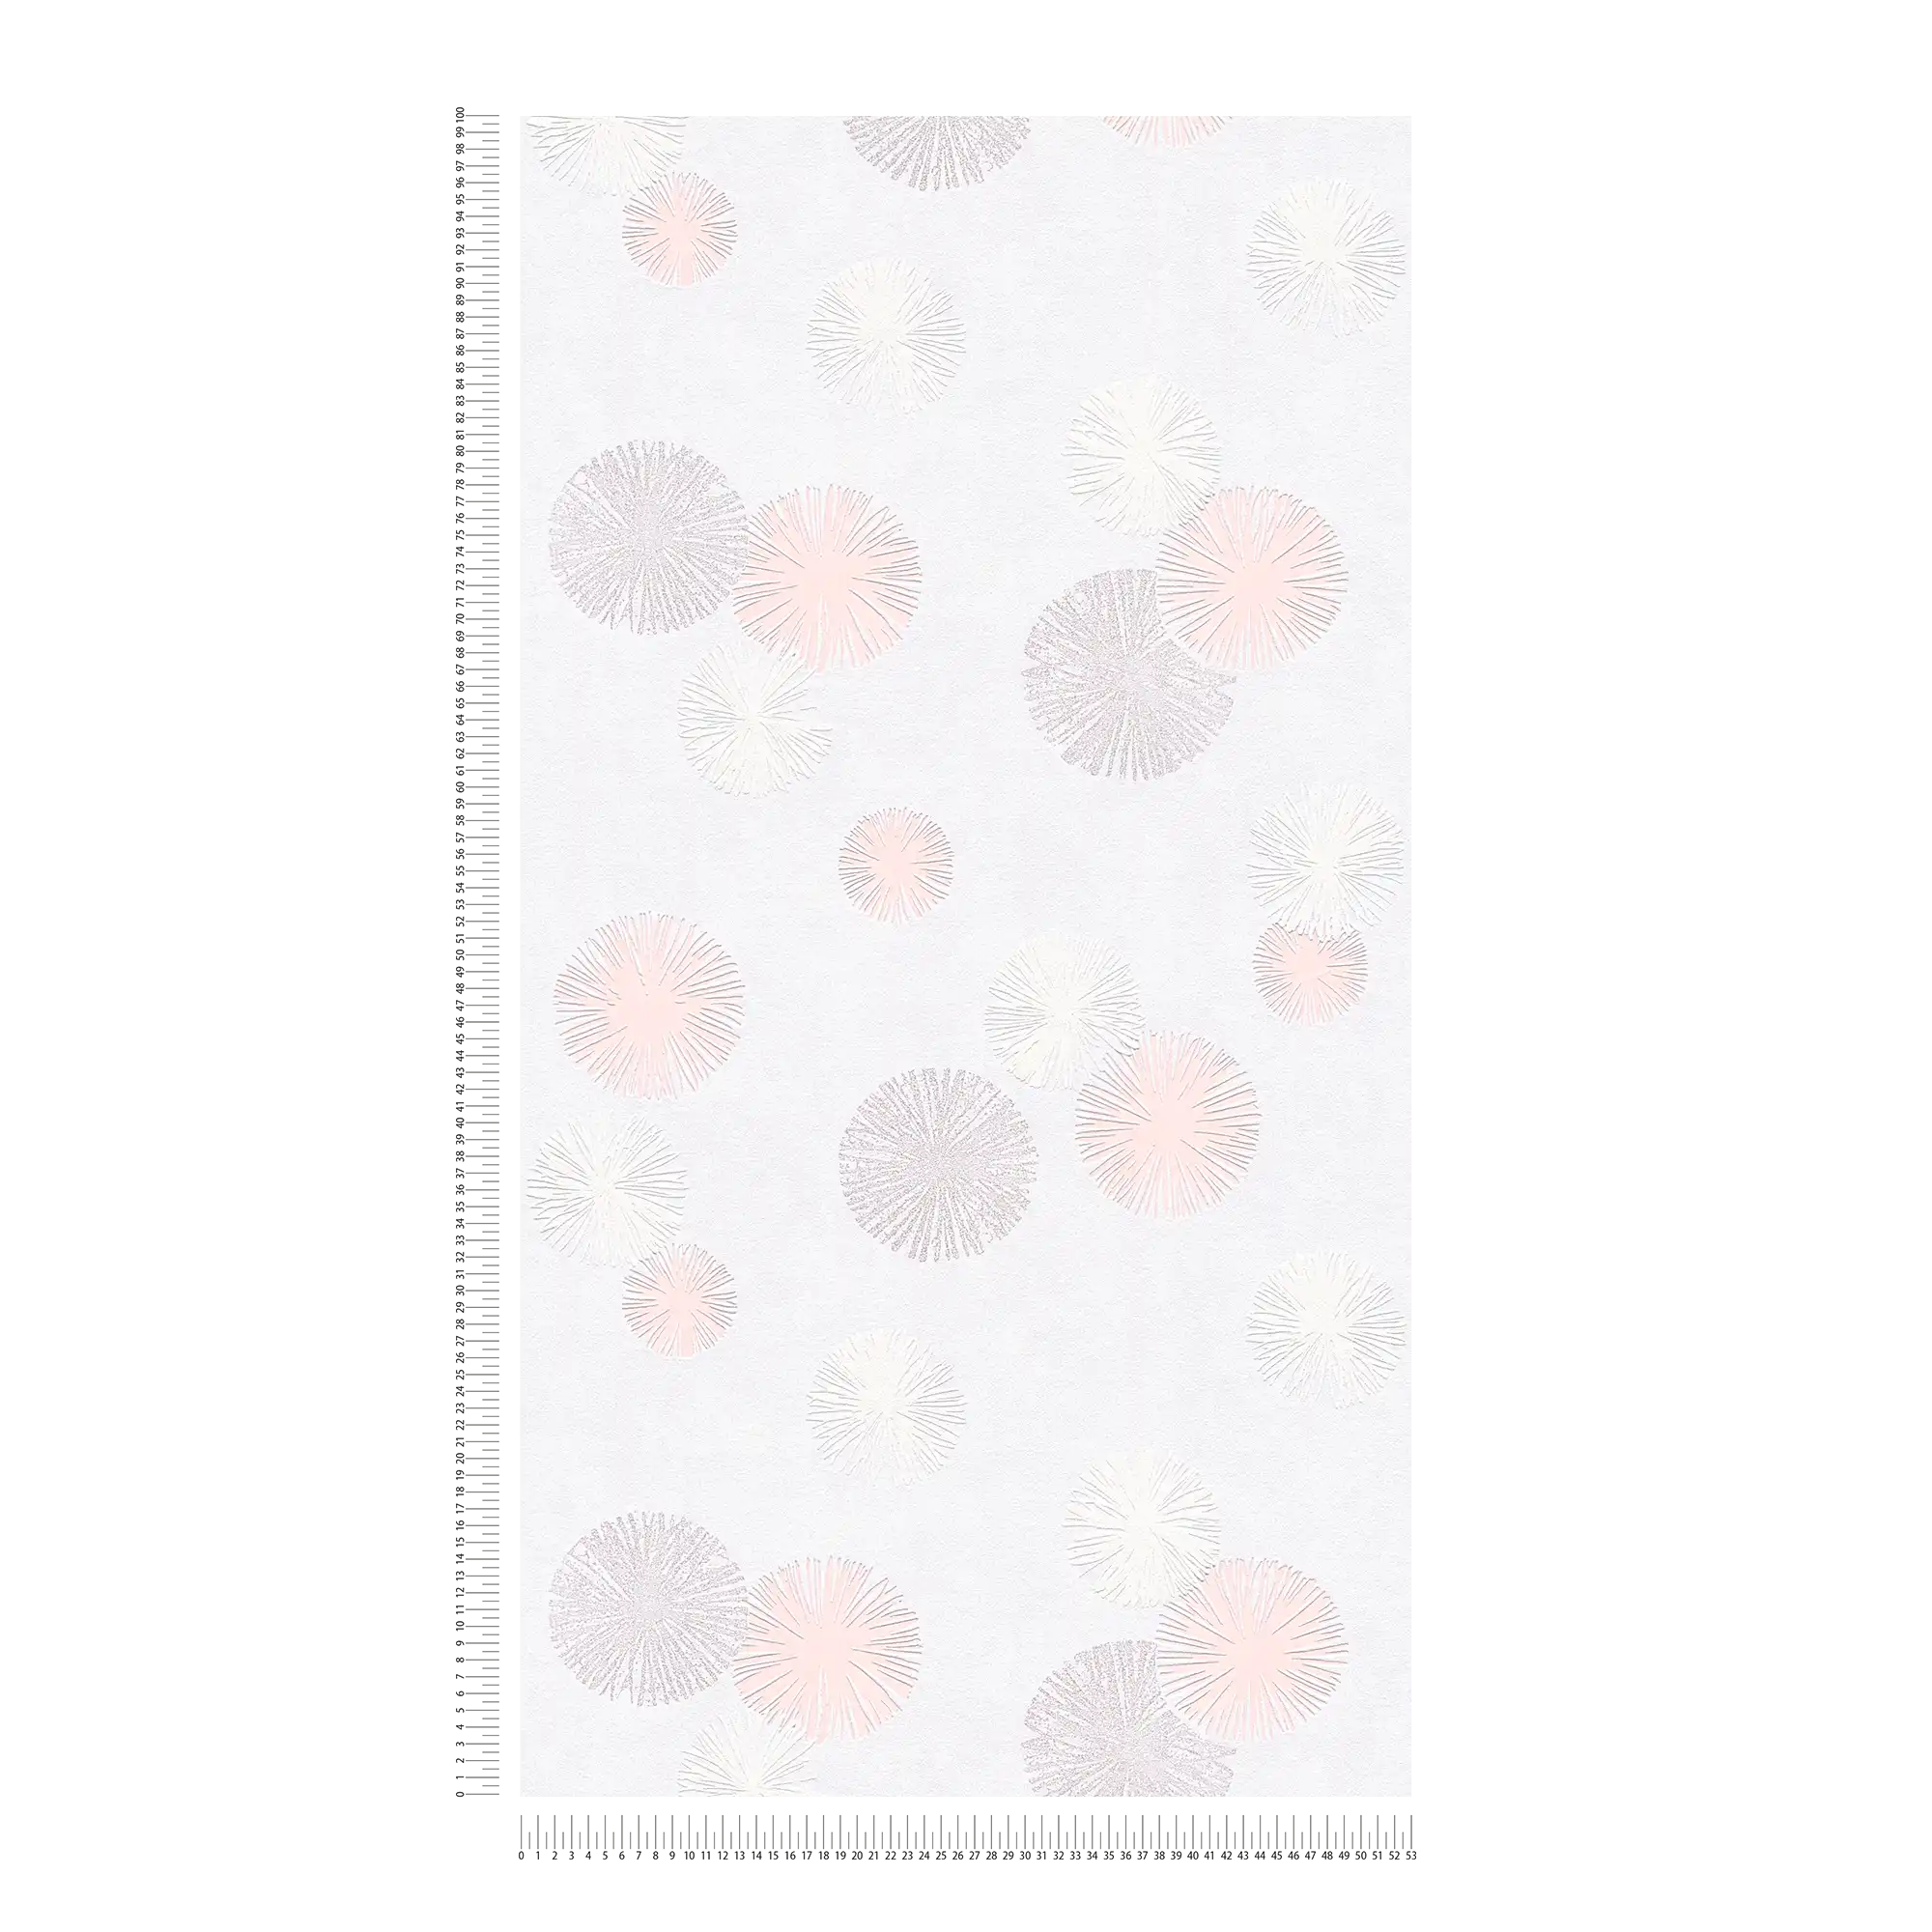             Textuurbehang met grafisch patroon - crème, metallic, roze
        